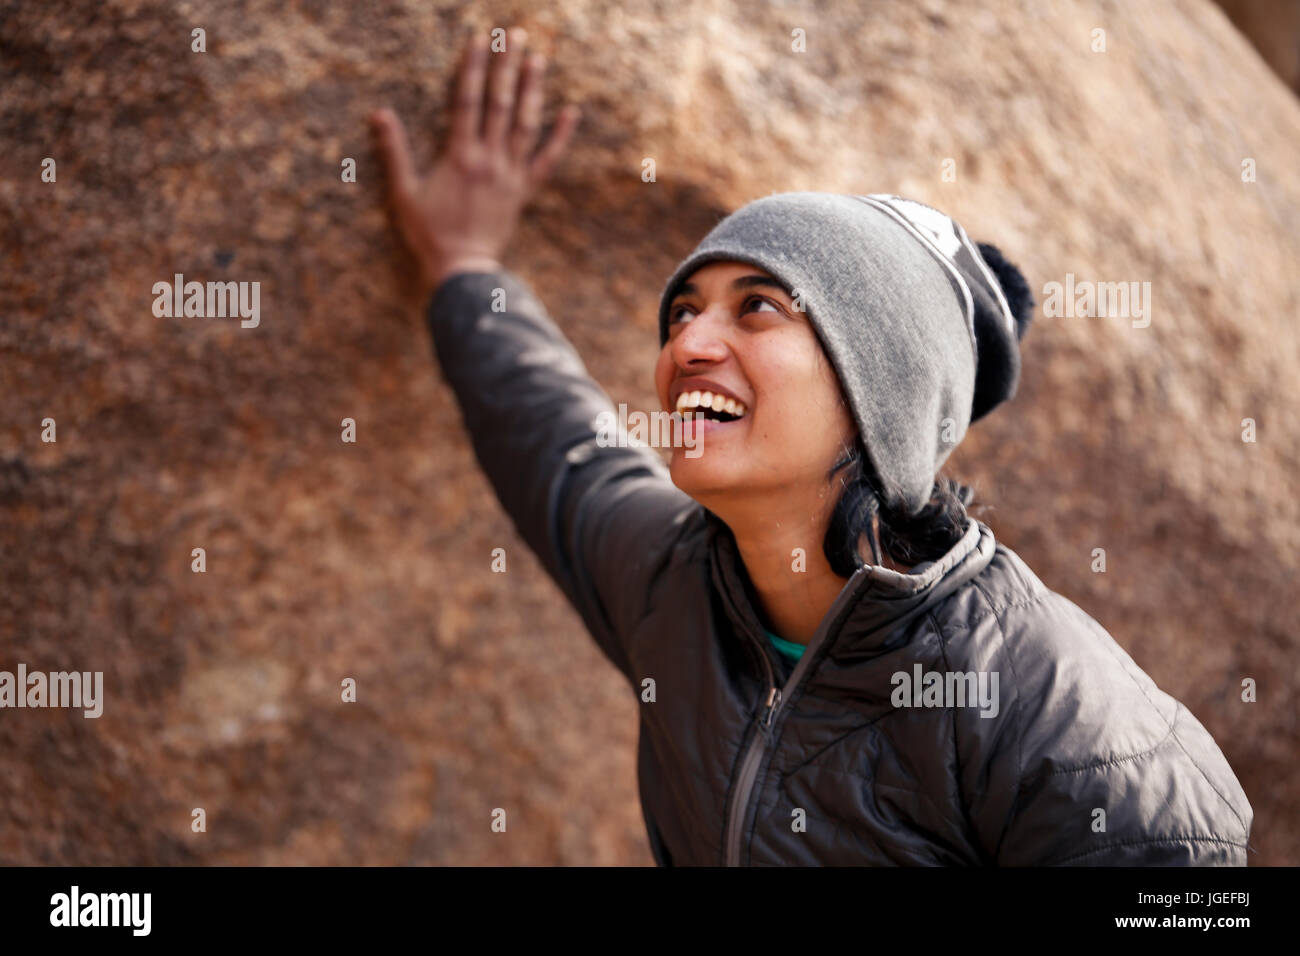 Sud giovane donna asiatica arrampicata su roccia nel deserto vestito per basse temperature Foto Stock